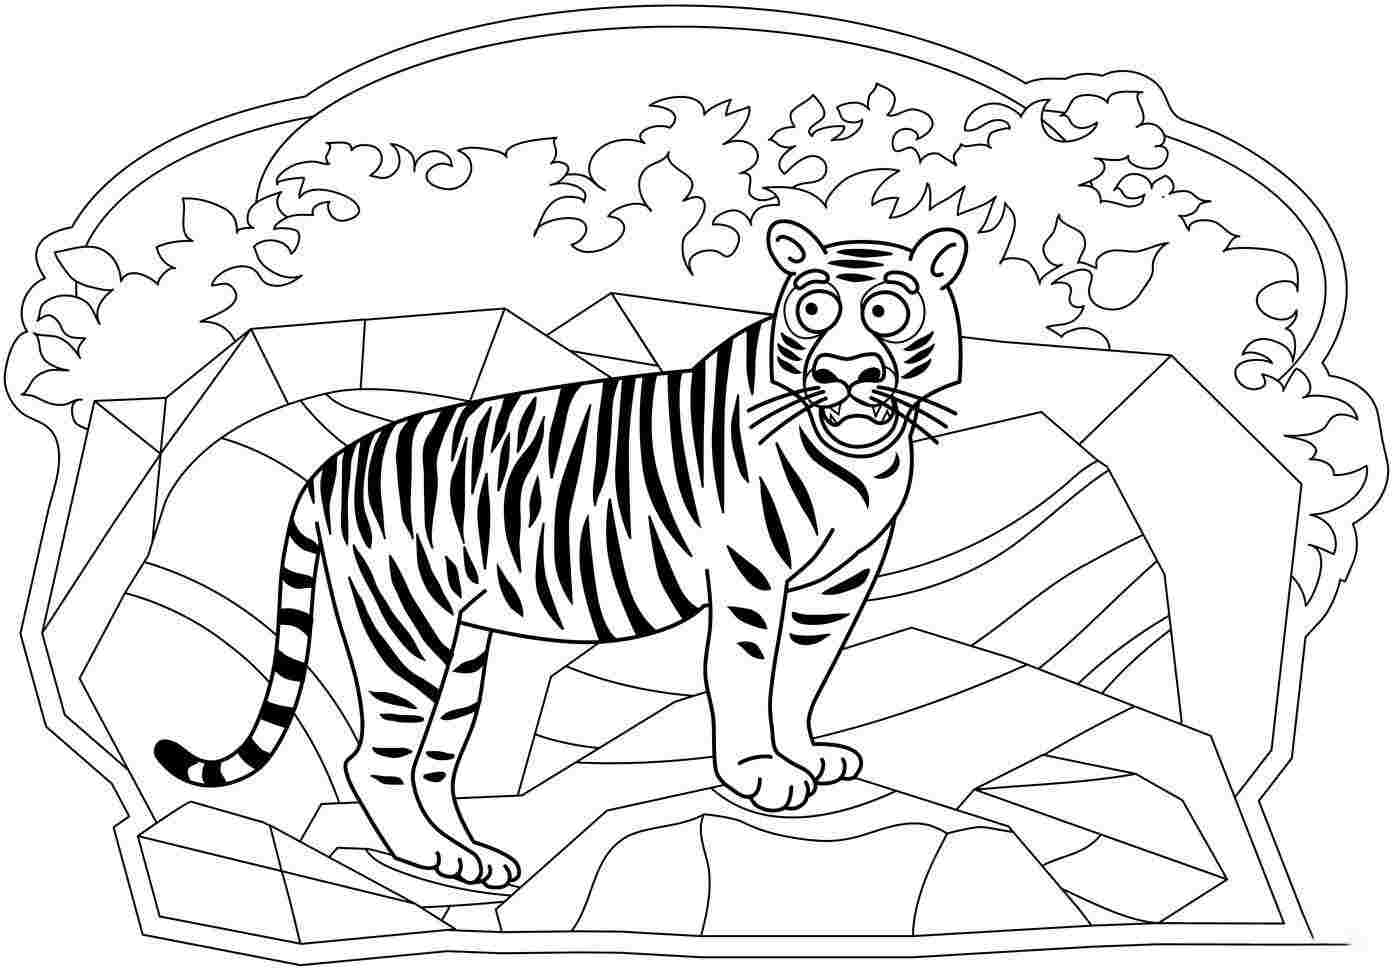 Испуганный взгляд тигра на скале от Tiger